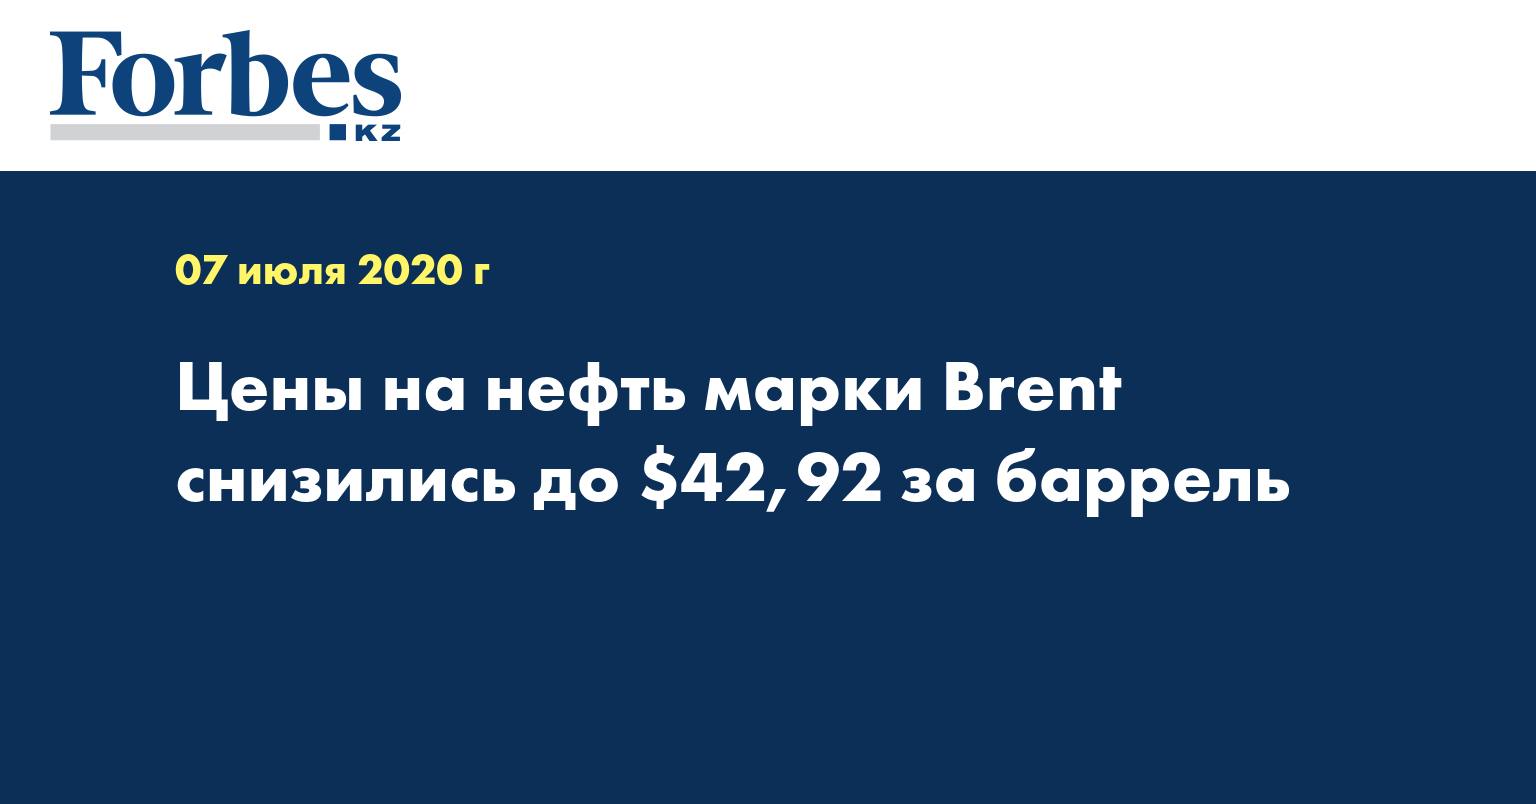 Цены на нефть марки Brent снизились до $42,92 за баррель